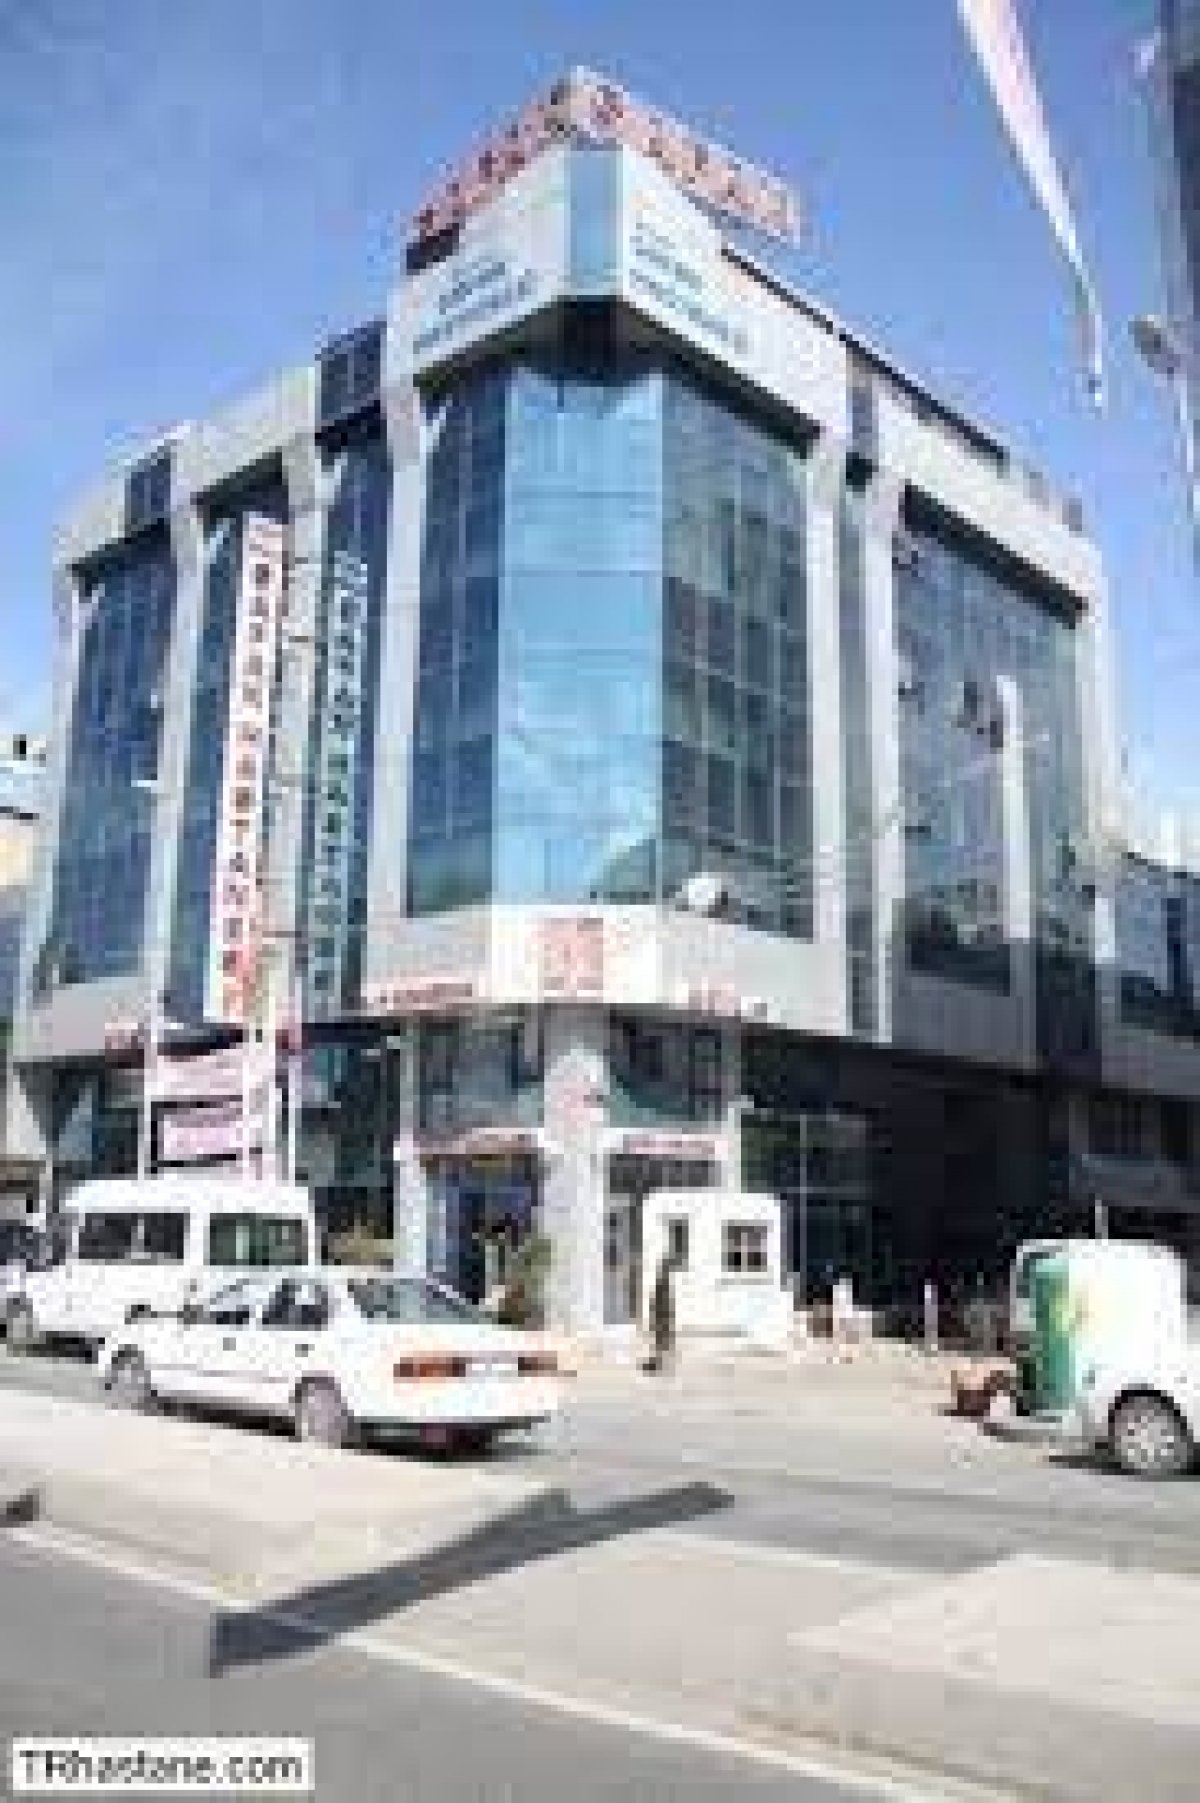 istanbul ozel besyuzevler safak hastanesi randevu al hastane nerede nasil gidilir muhabir tv